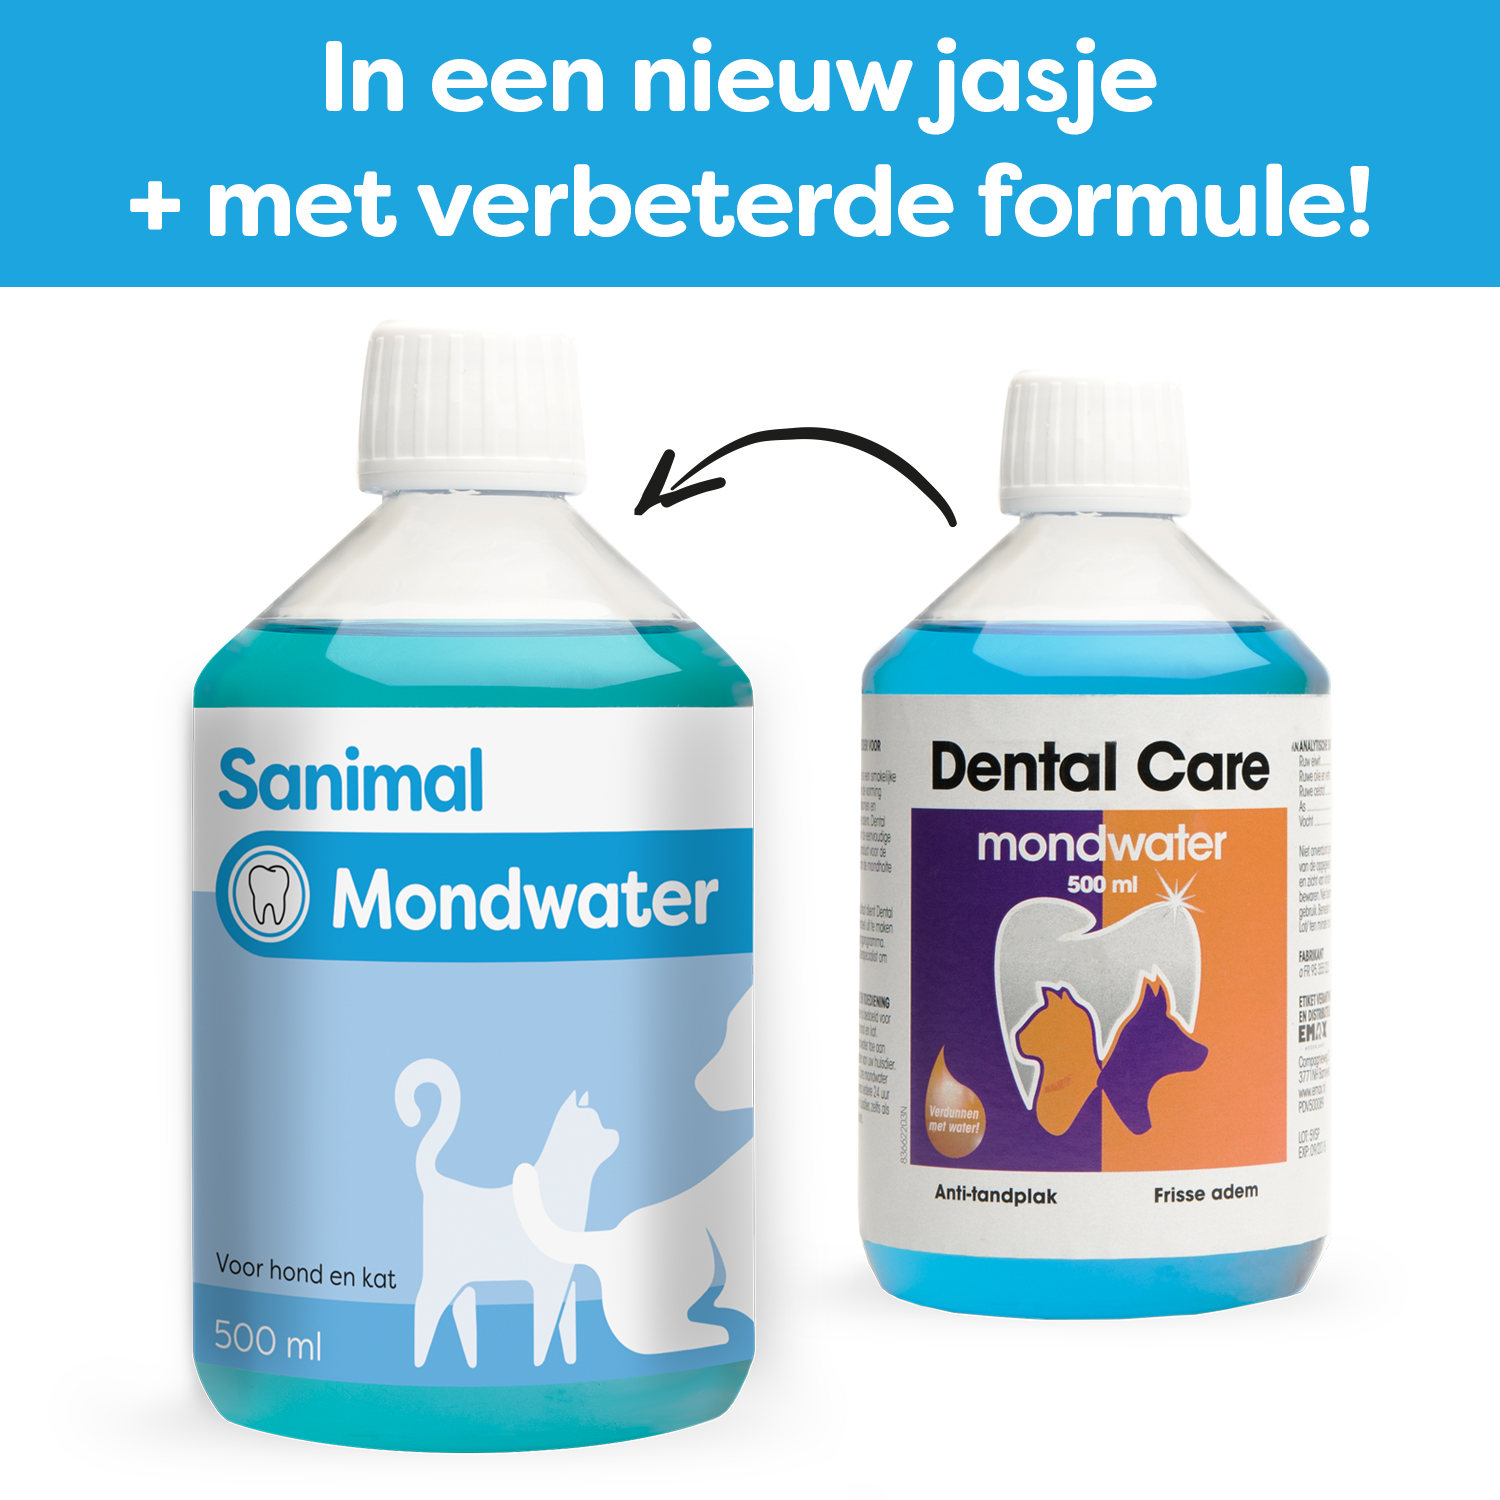 Sanimal Mondwater voor de mondverzorging van honden en katten - Emax.nl